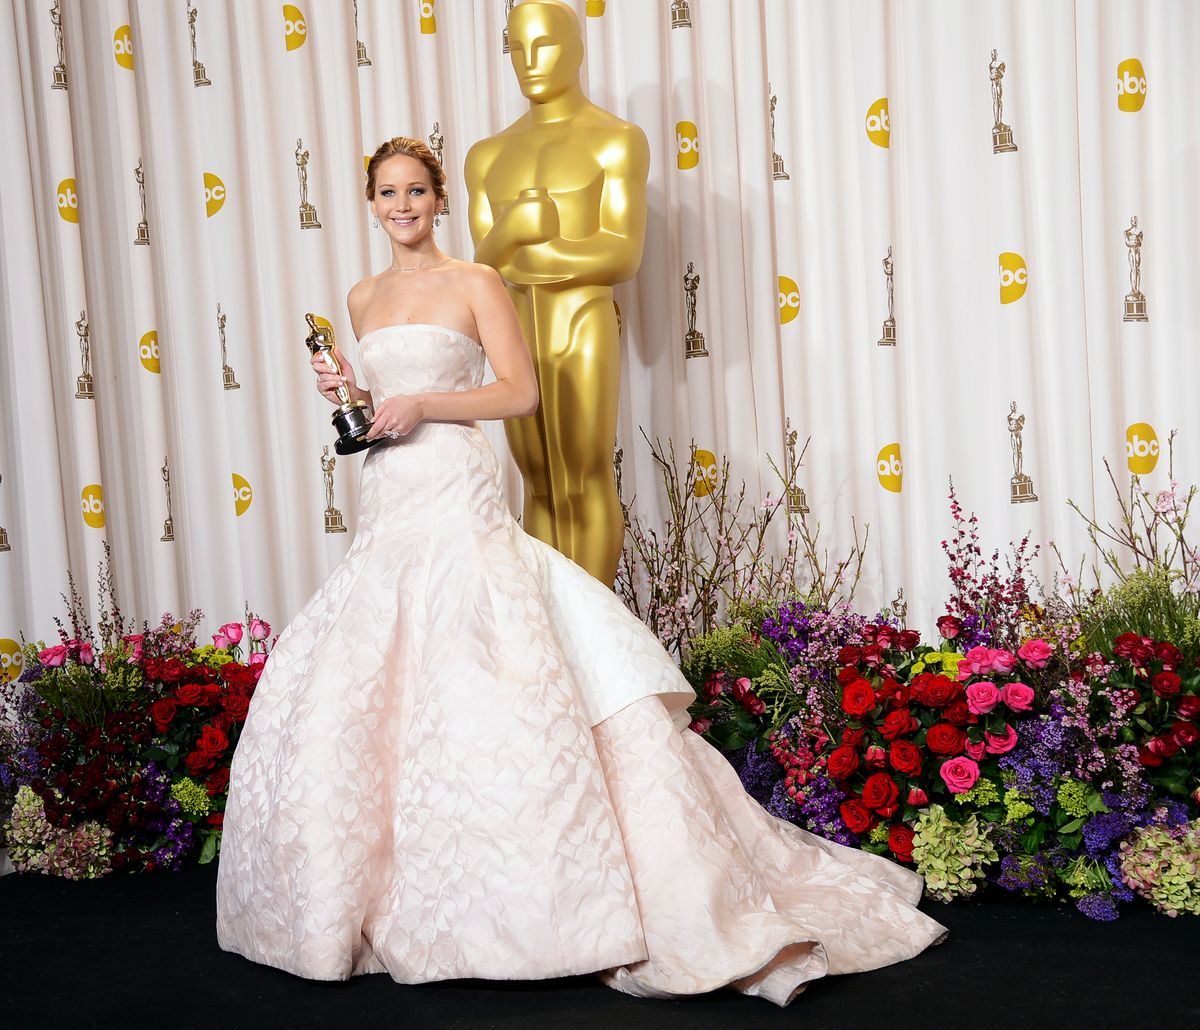 Дженнифер Лоуренс на фотоколле в зале для прессы во время церемонии вручения «Оскар»